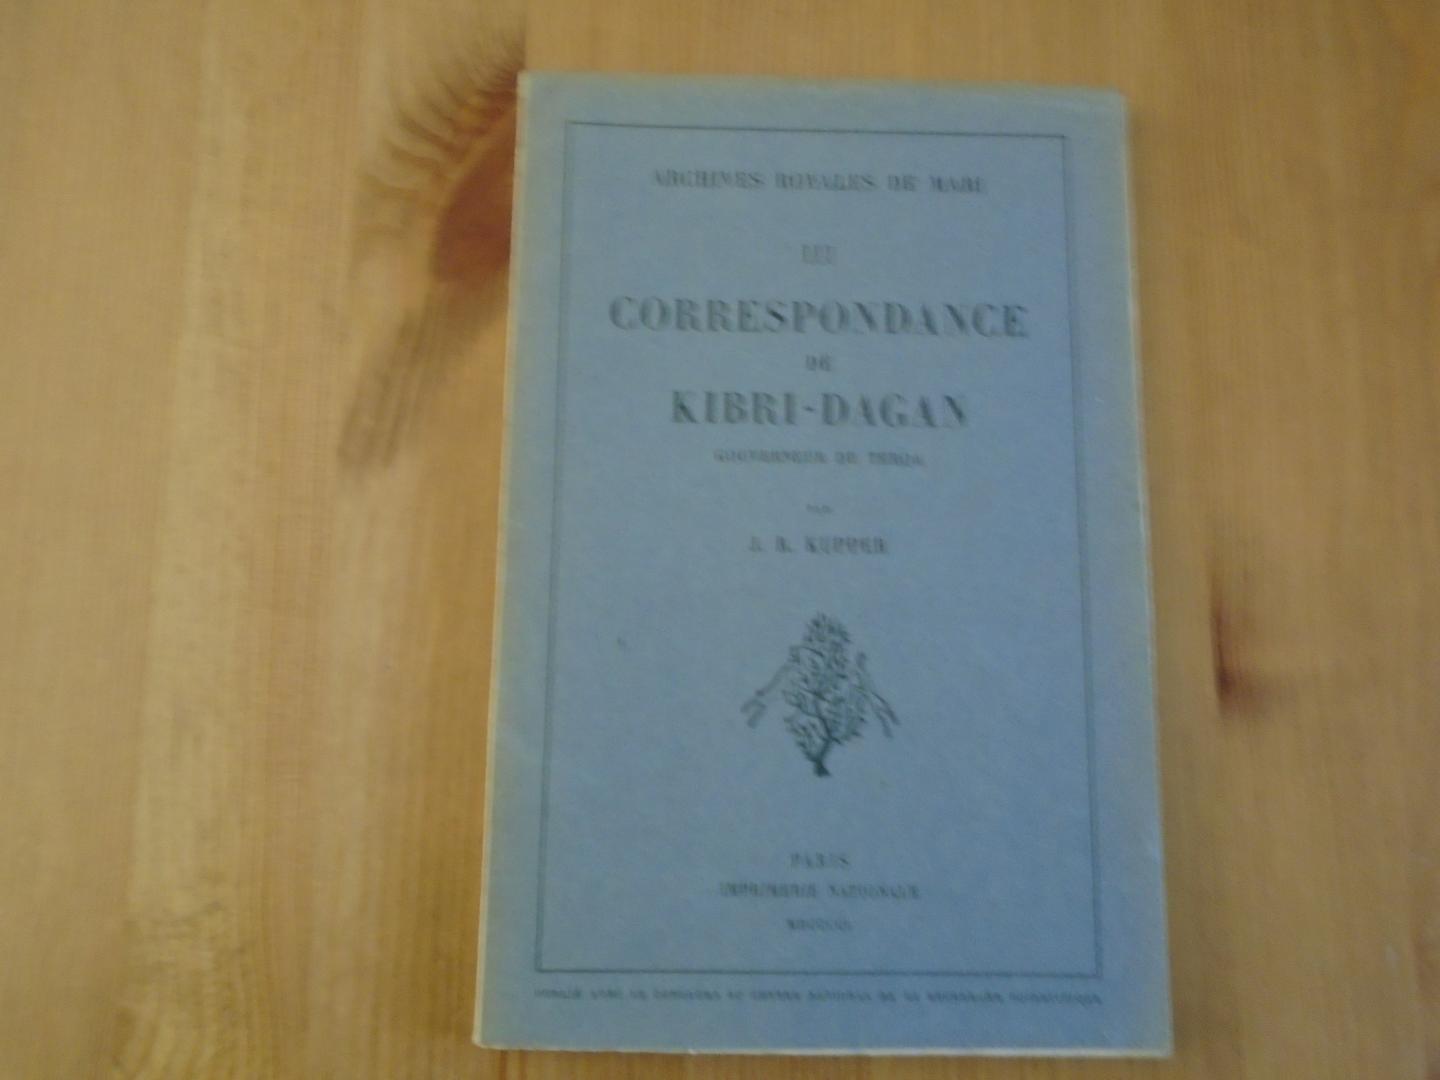 Kupper, J.R. - Correspondance de Kibri-Dagan (Archives Royales de Mari III)